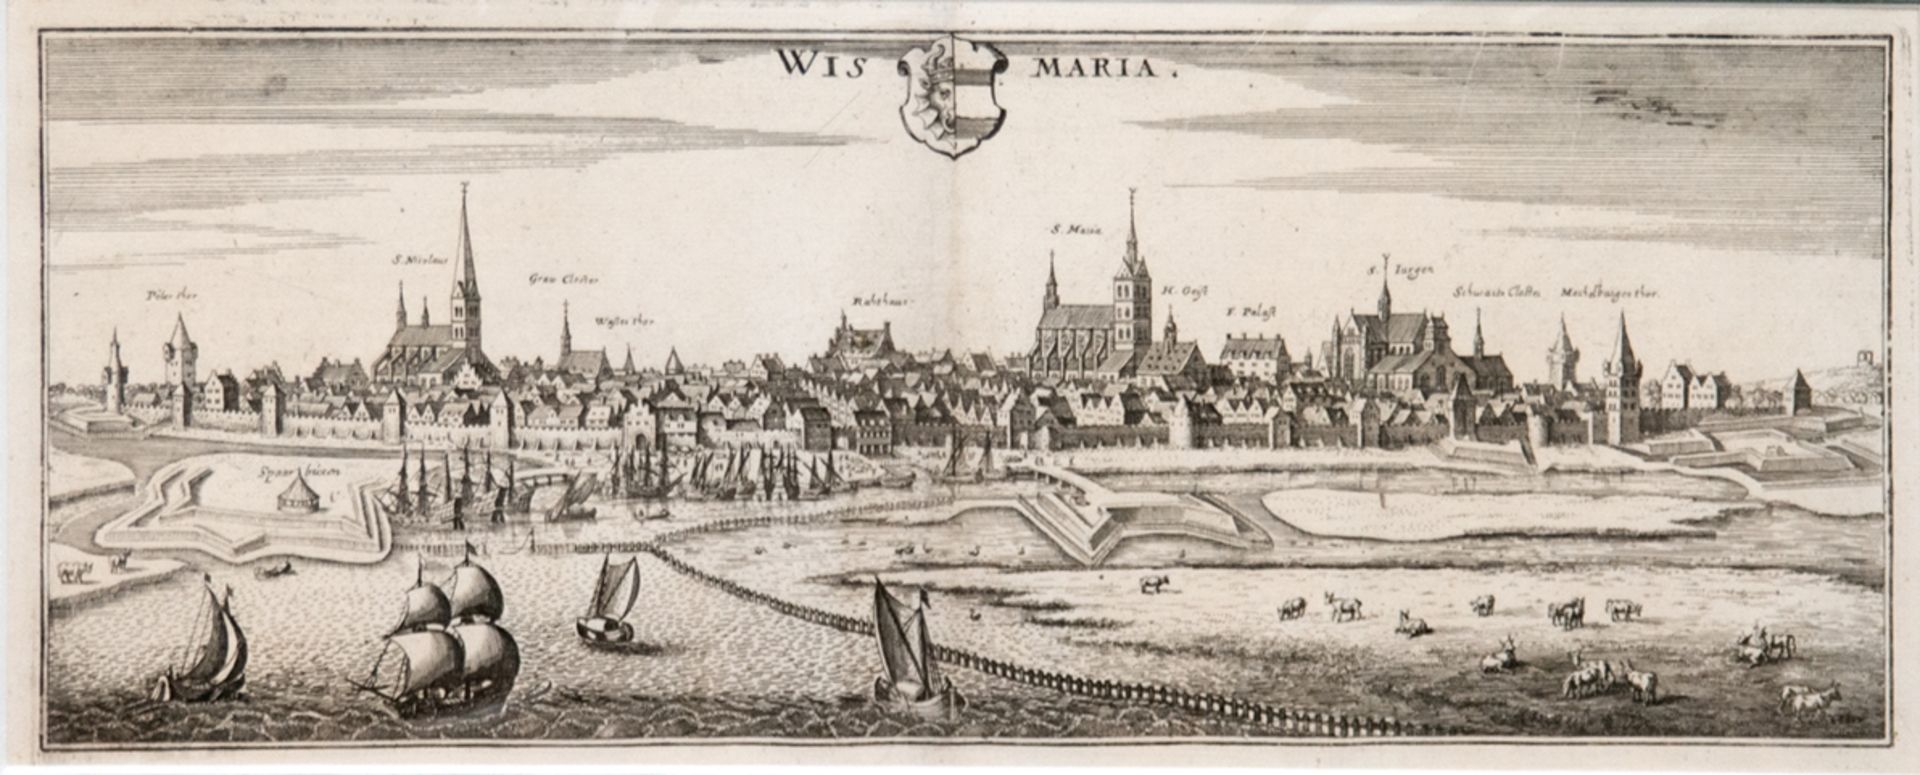 Merian, Matthäus "Wismaria", Kupferstich mit Wappen o.m., 14x36 cm, im Passepartout